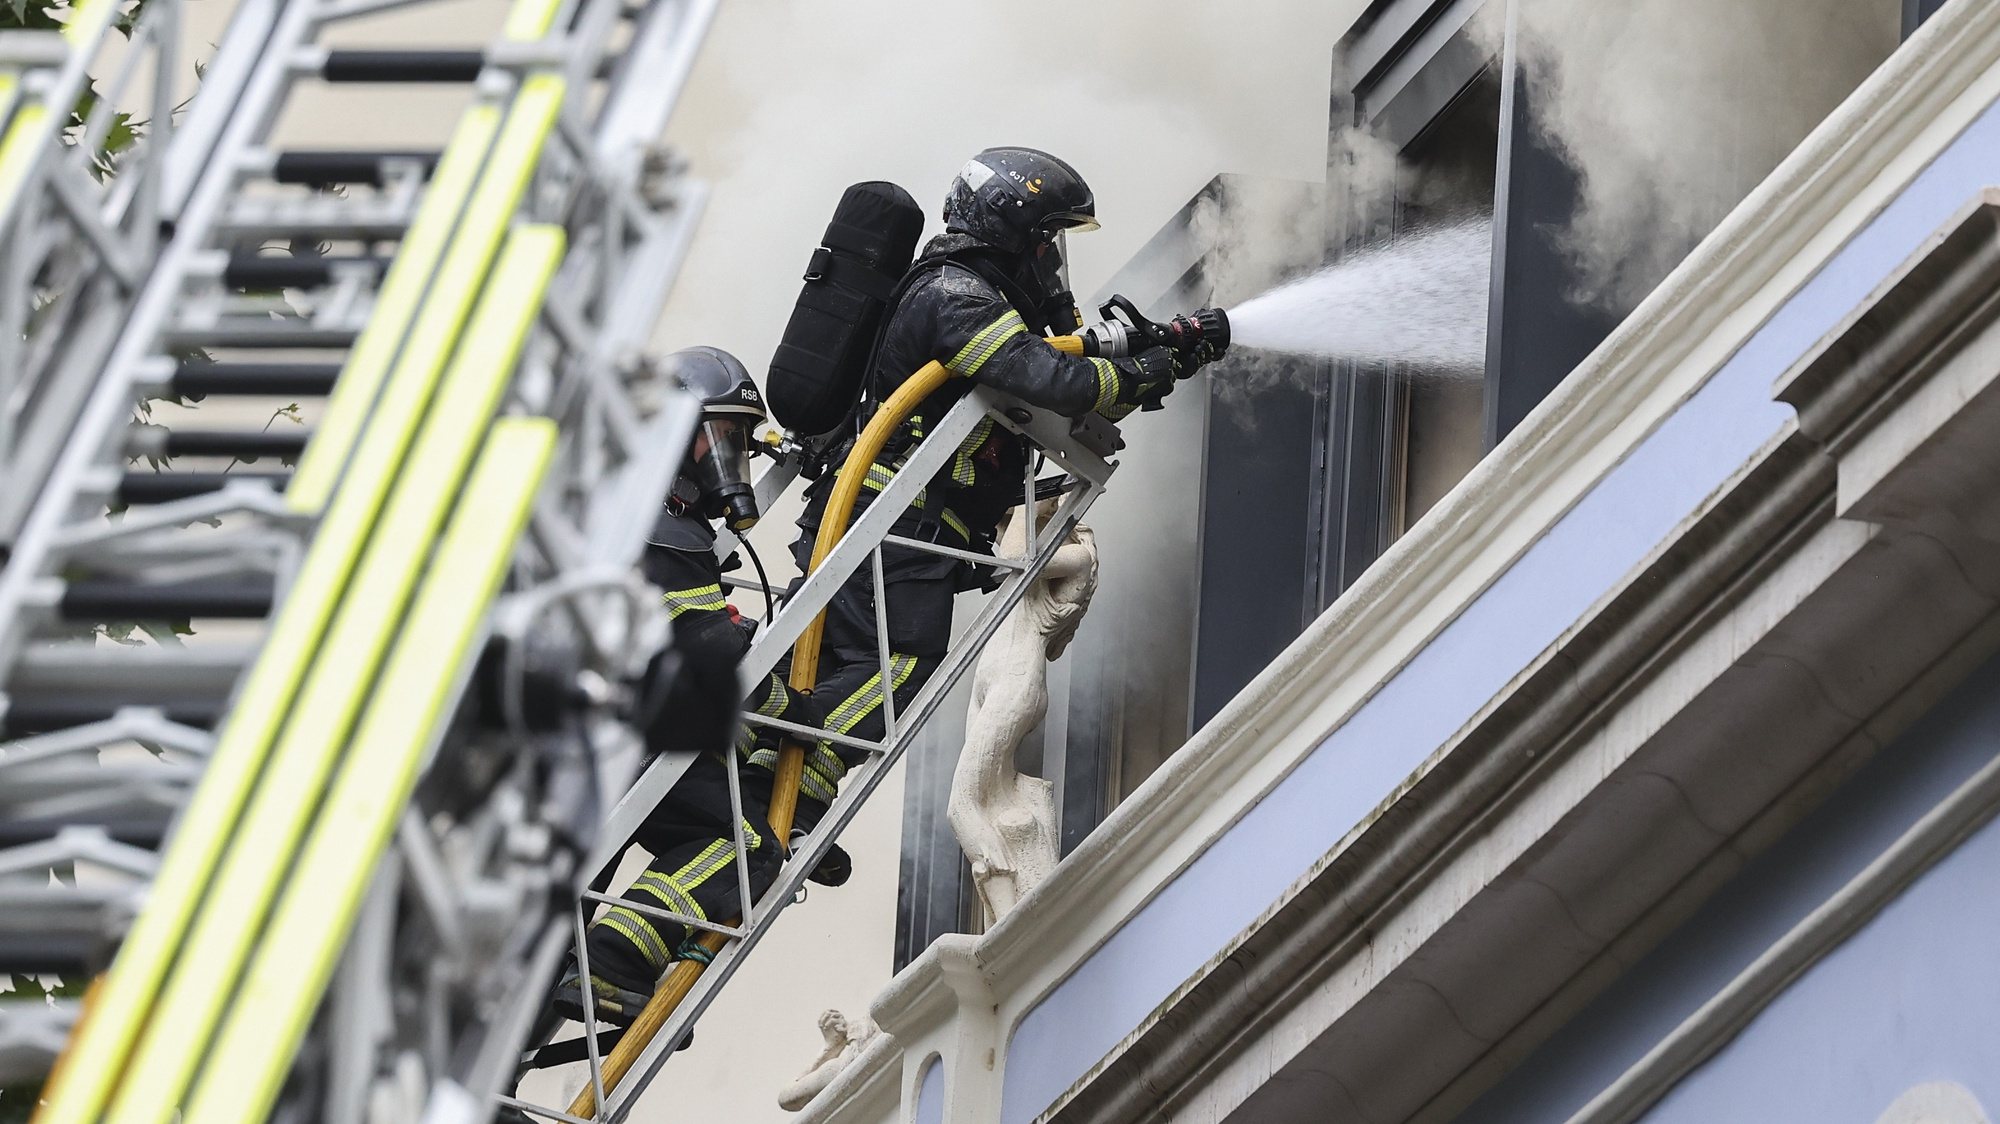 Bombeiros combatem o incêndio que deflagrou hoje num hotel em construção na Avenida da Liberdade, em Lisboa, e que já havia sido dado como circunscrito, acabou por se propagar à cobertura do edifício, obrigando ao reforço de meios, segundo os bombeiros, Lisboa, 7 de junho de 2024. De acordo com a página da ANEPC - Autoridade Nacional de Emergência e Proteção Civil, o incêndio está a ser combativo por 19 veículos e 61 operacionais. MANUEL DE ALMEIDA/LUSA